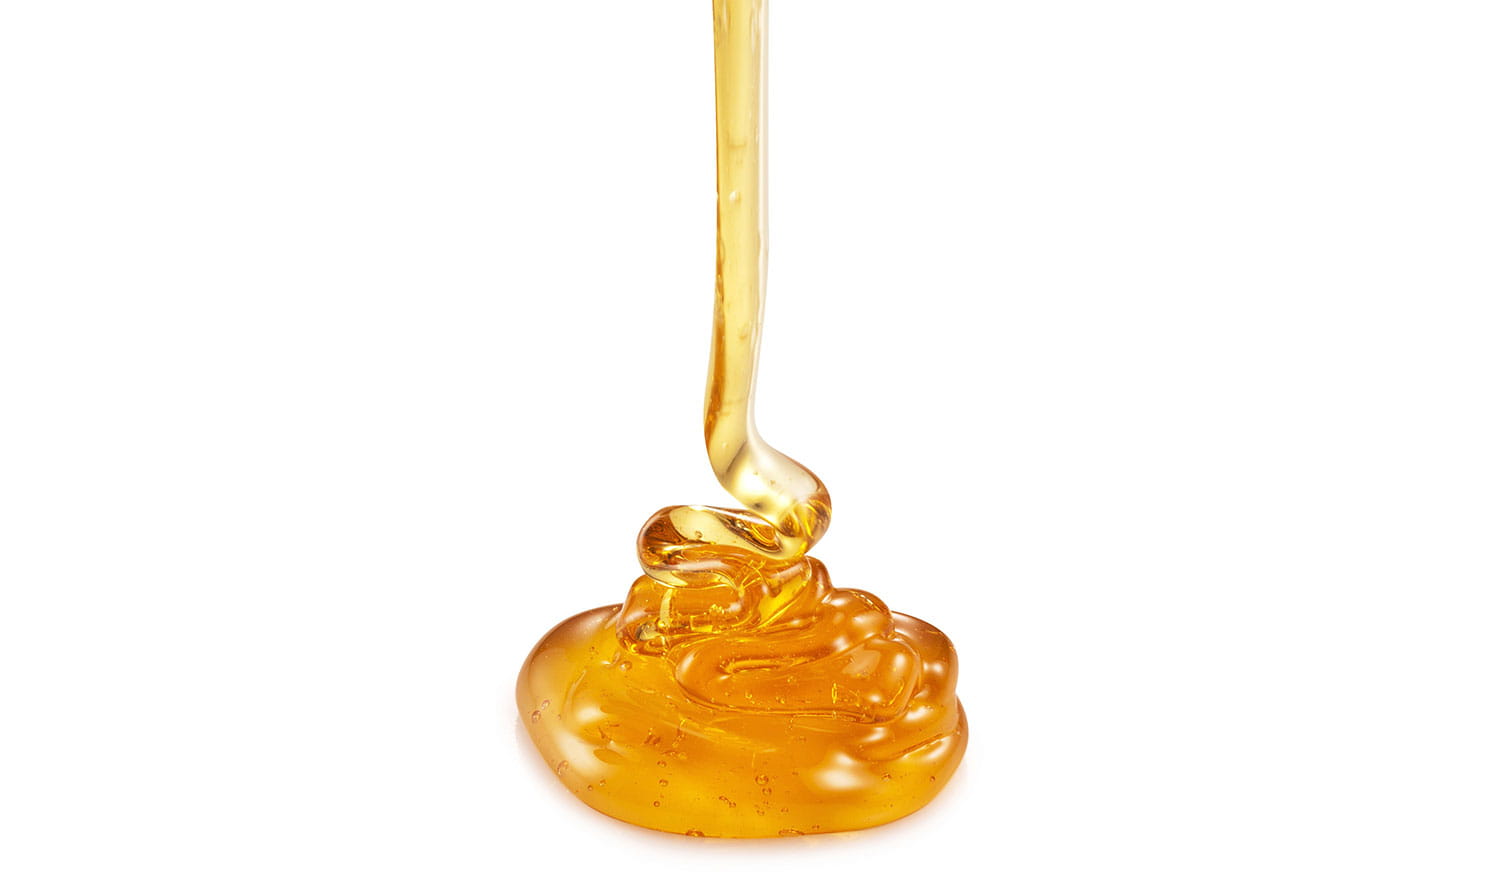 honey viscosity